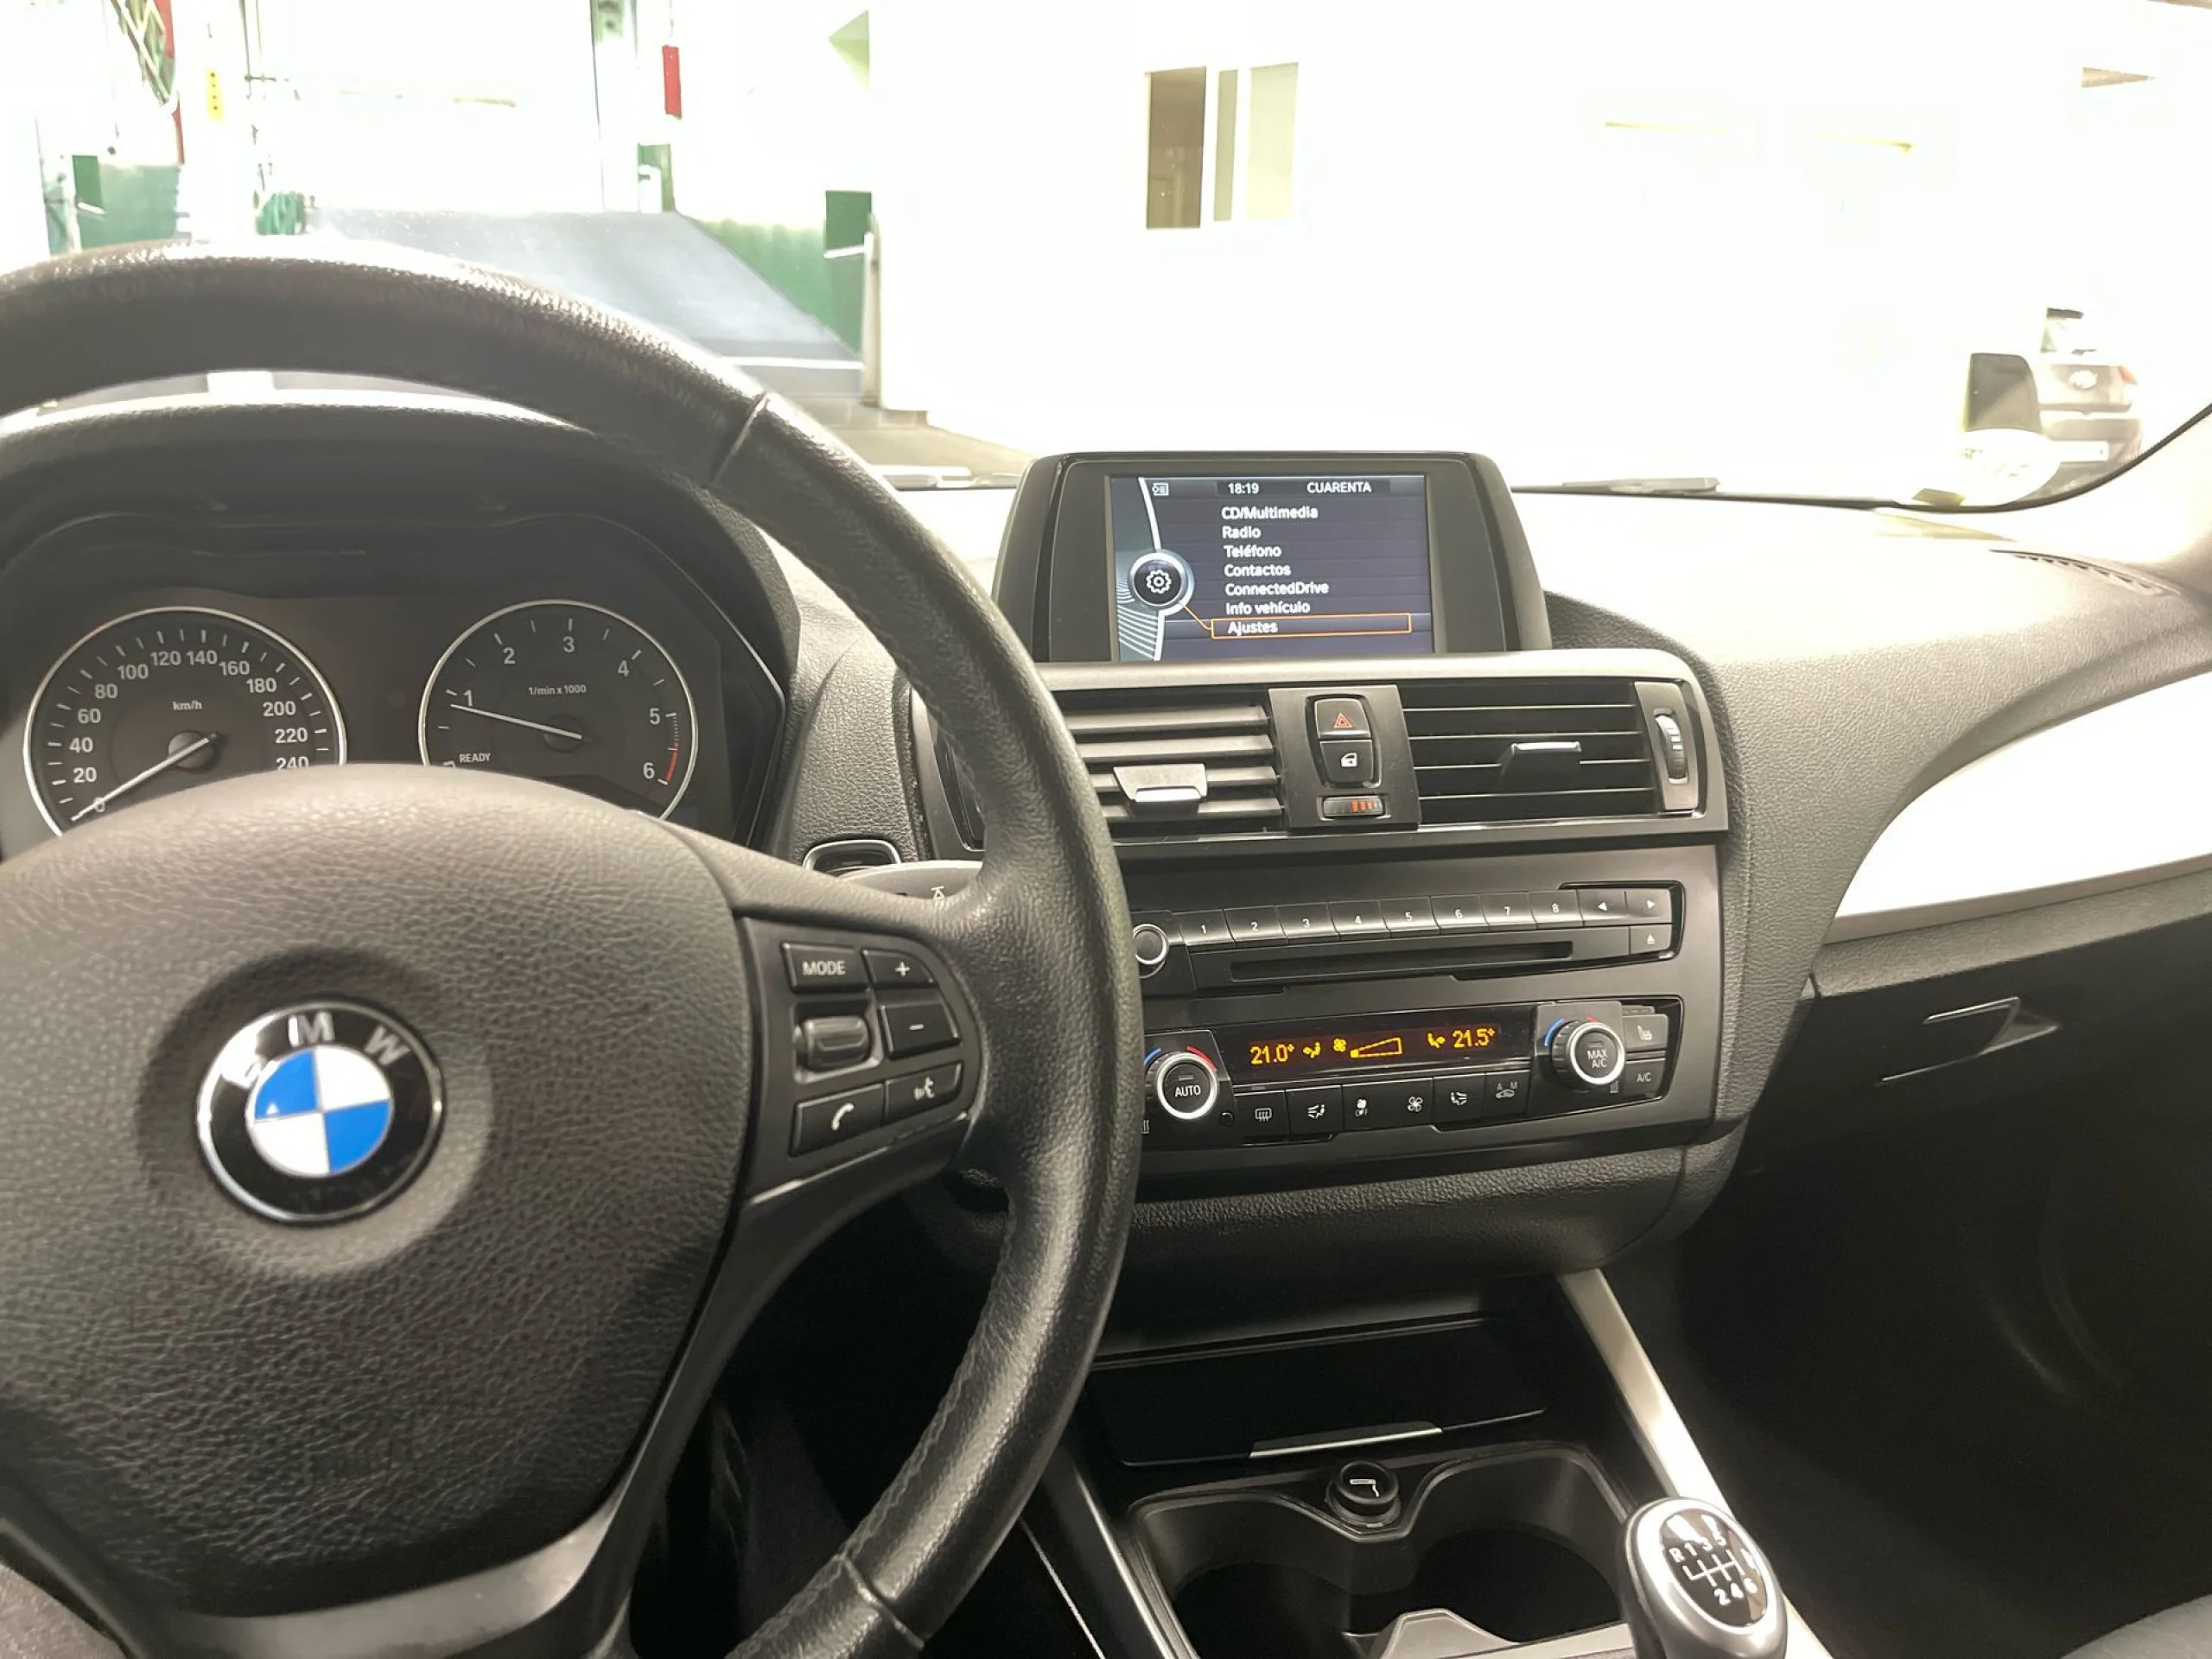 BMW Serie 1 116d 85 kW (116 CV) - Foto 15